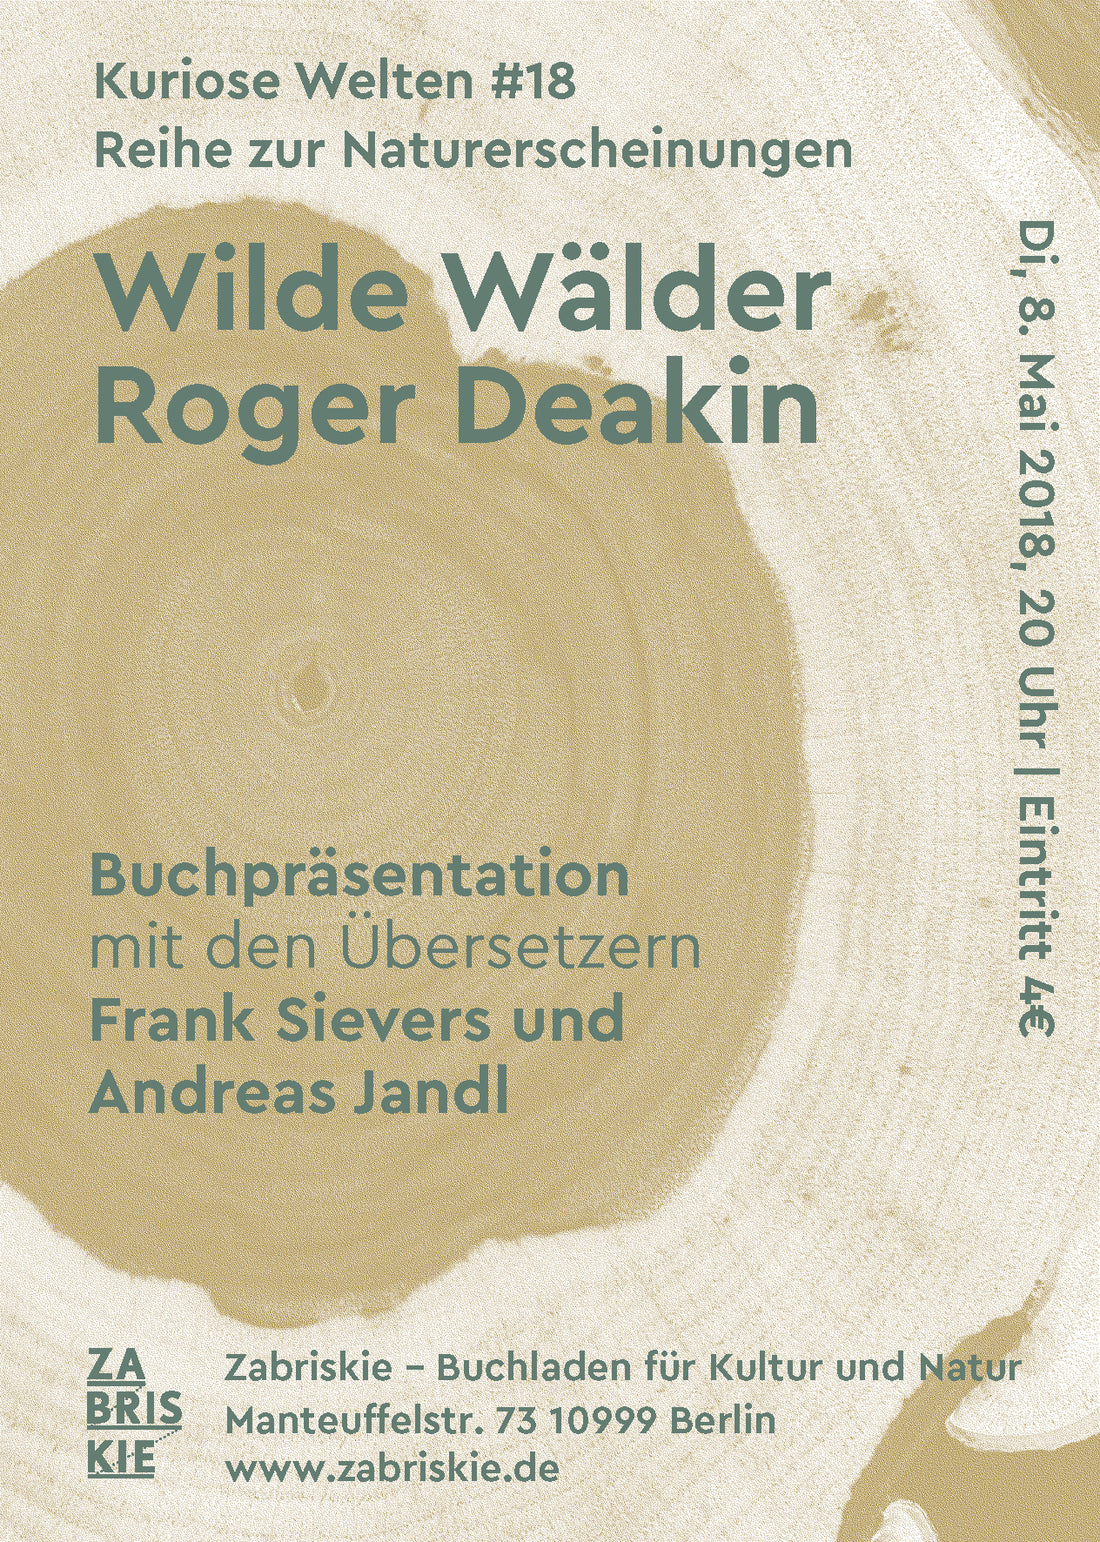 Kuriose Welten #18: Buchpräsentation "Wilde Wälder" von Roger Deakin